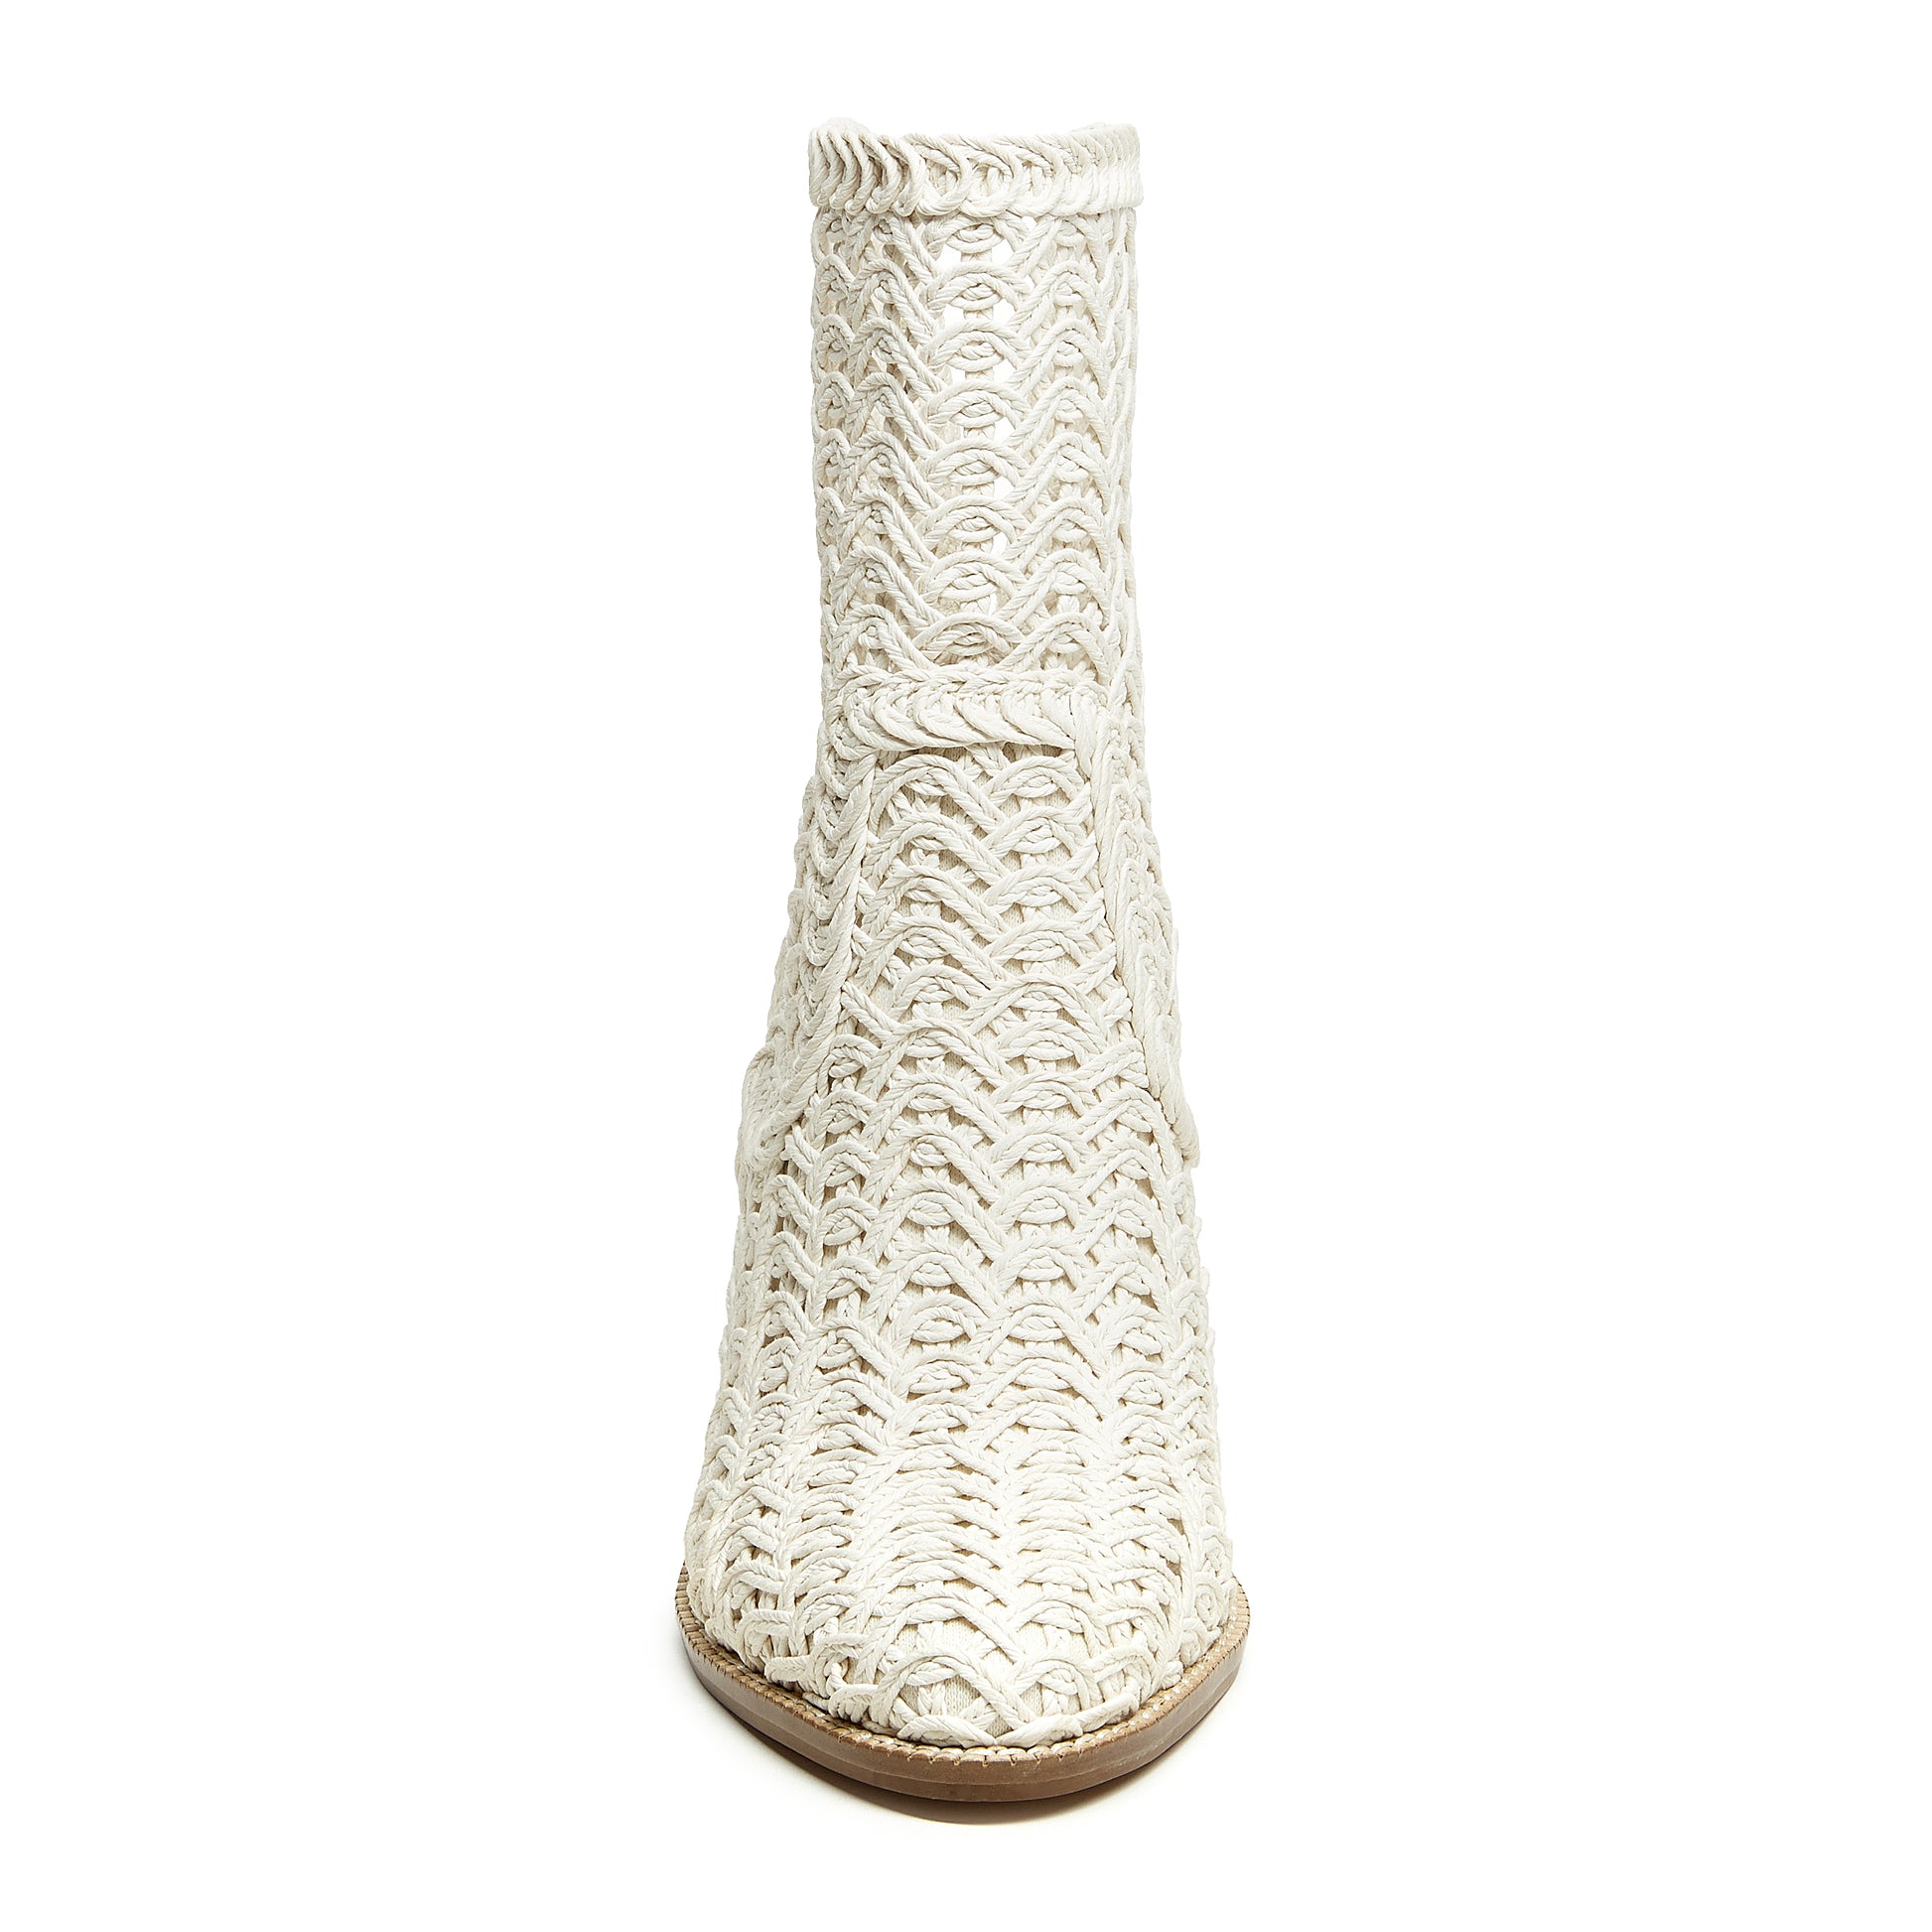  Emery Ivory Crochet Booties - Kelsi Dagger